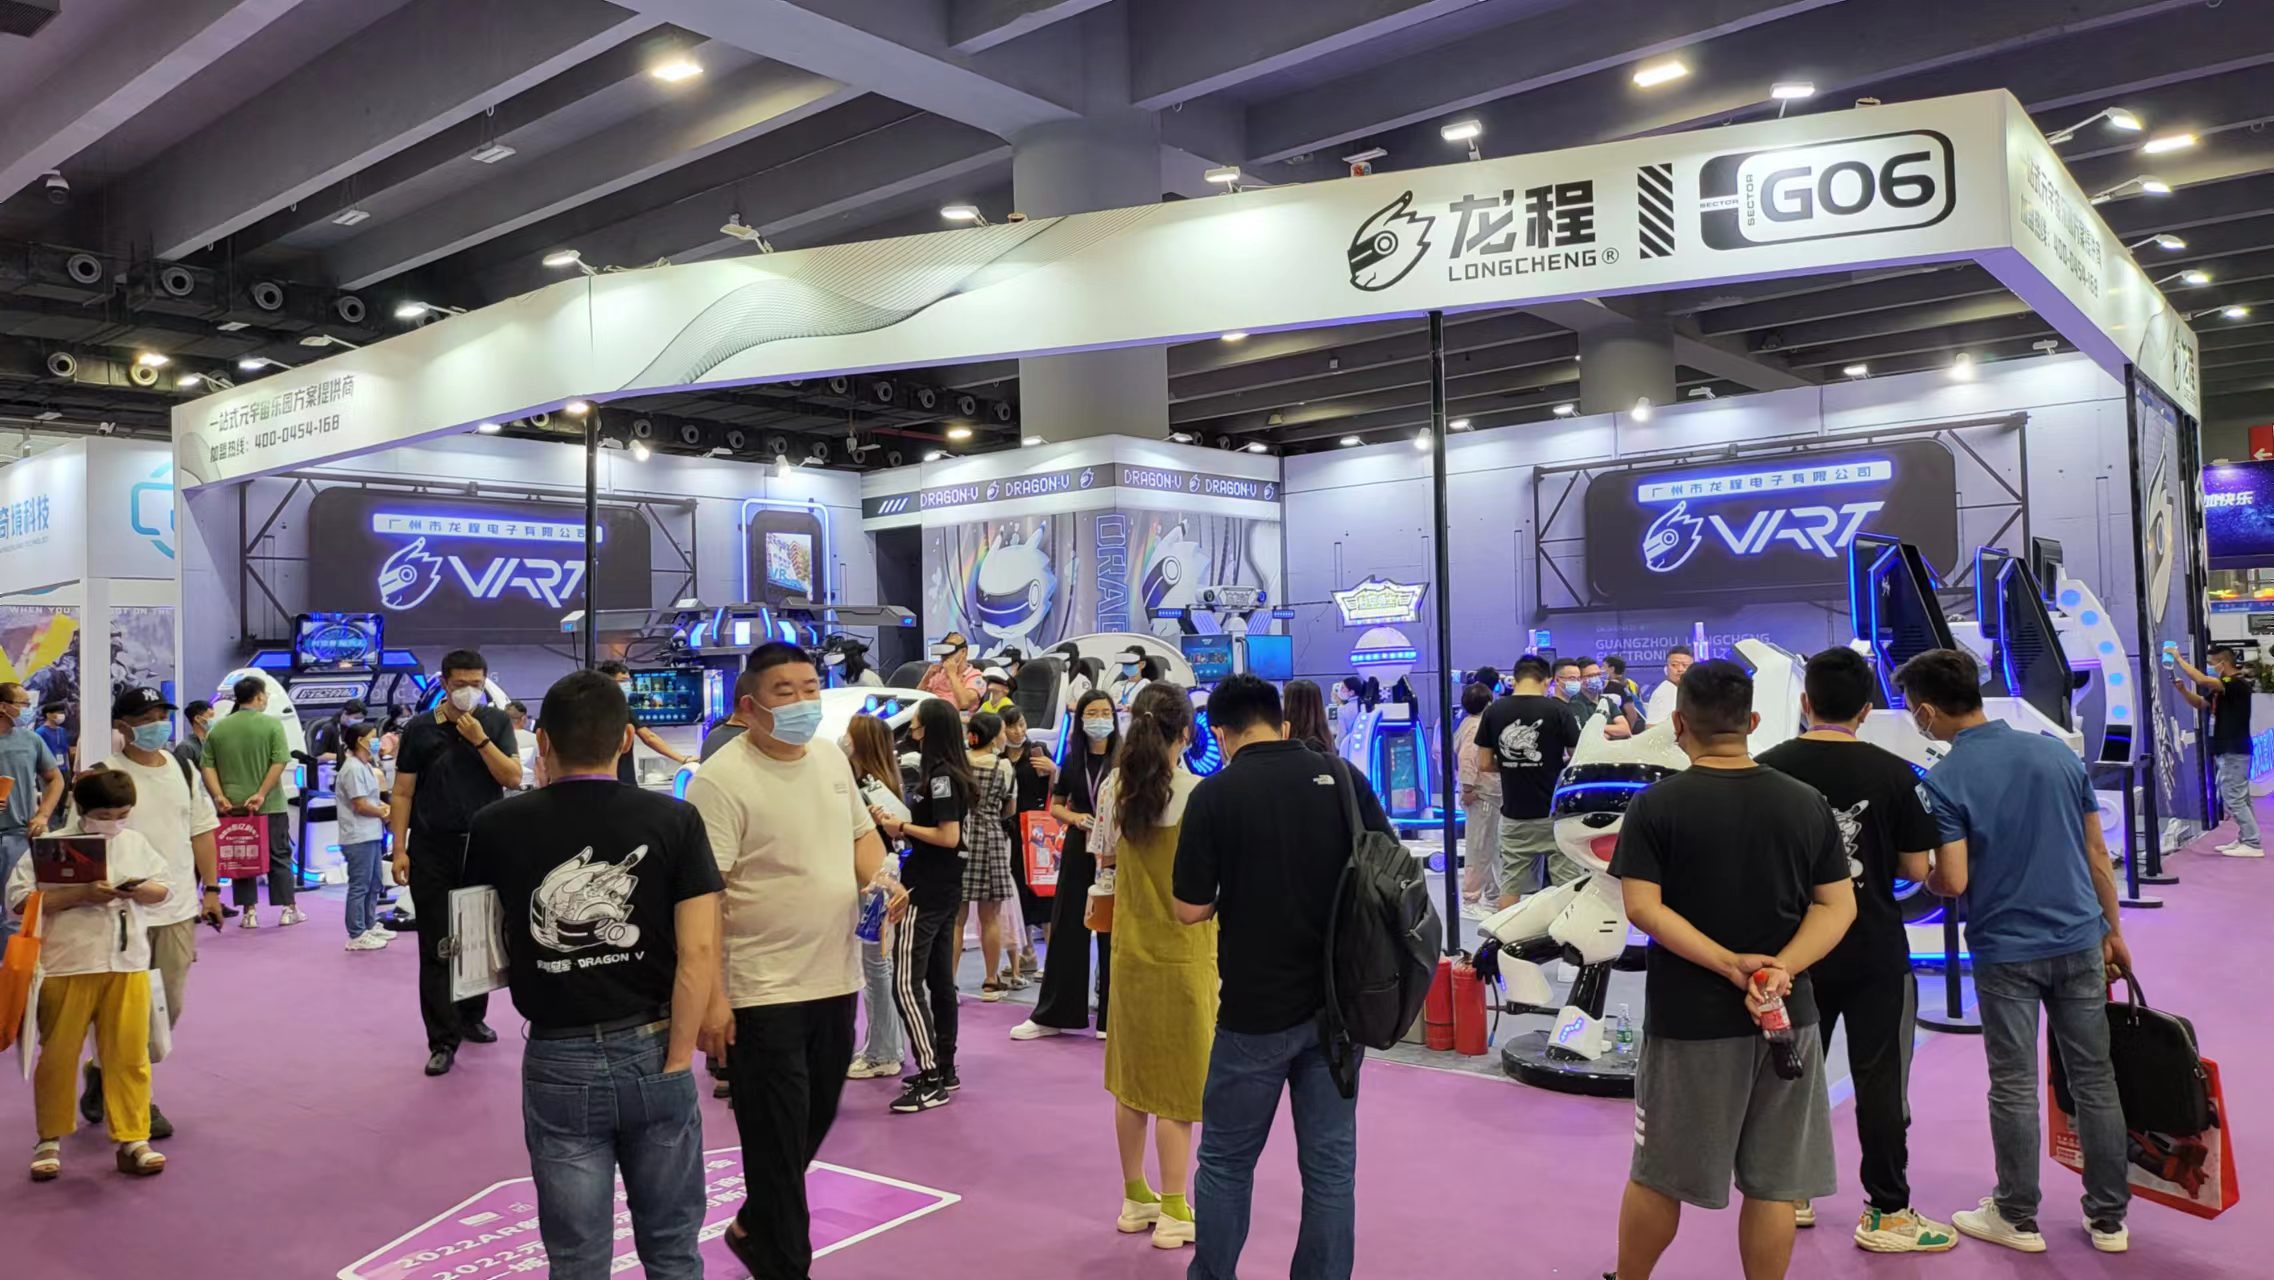 VART VR |Guangzhou Metaverse'i näituseboks G06 on tõesti populaarne